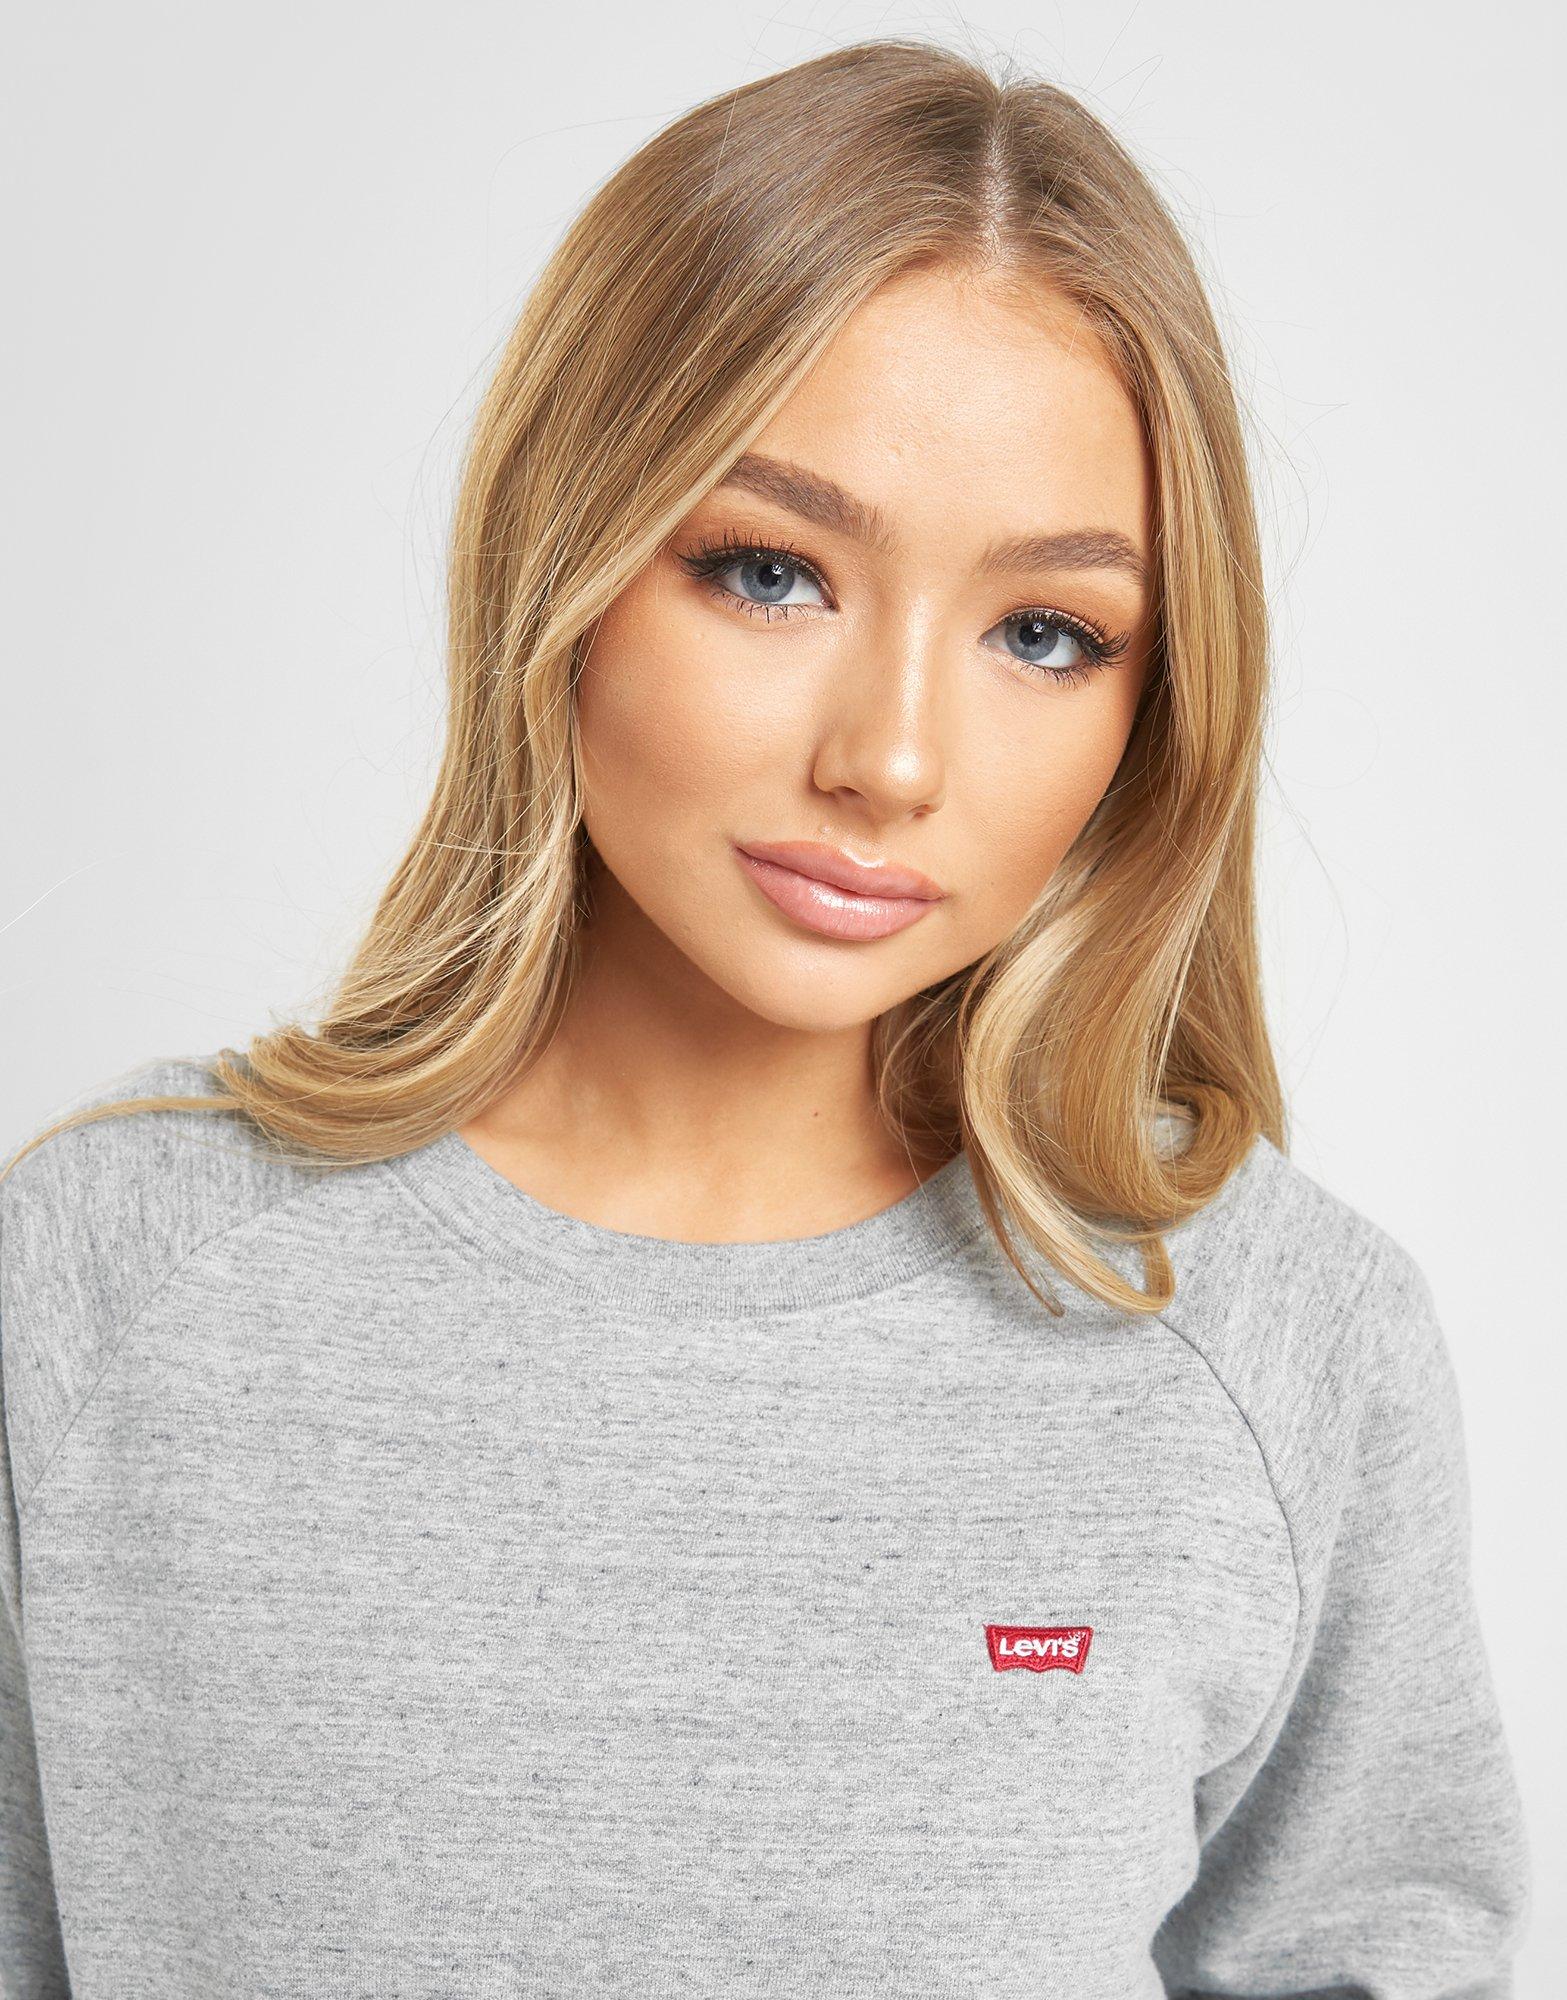 levi's grey women's sweatshirt